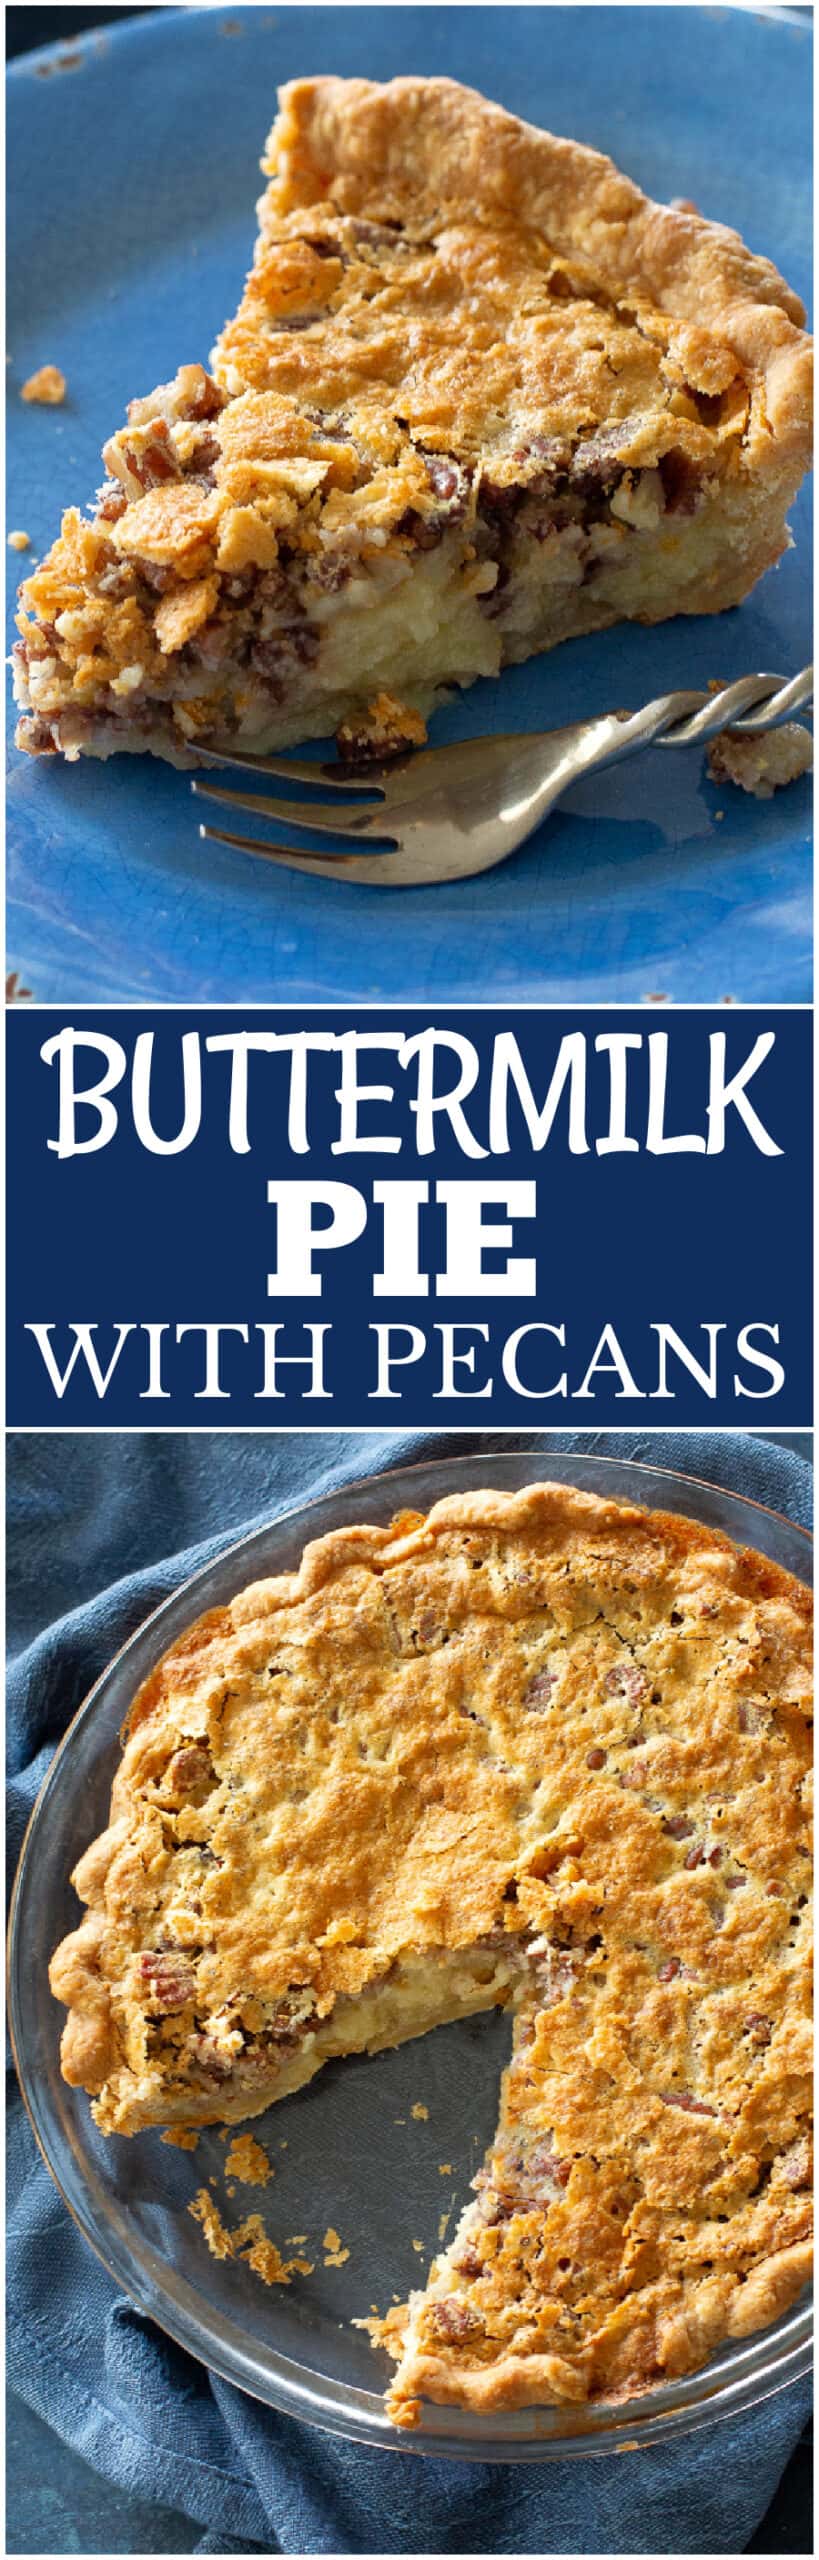 buttermilk pie with pecans